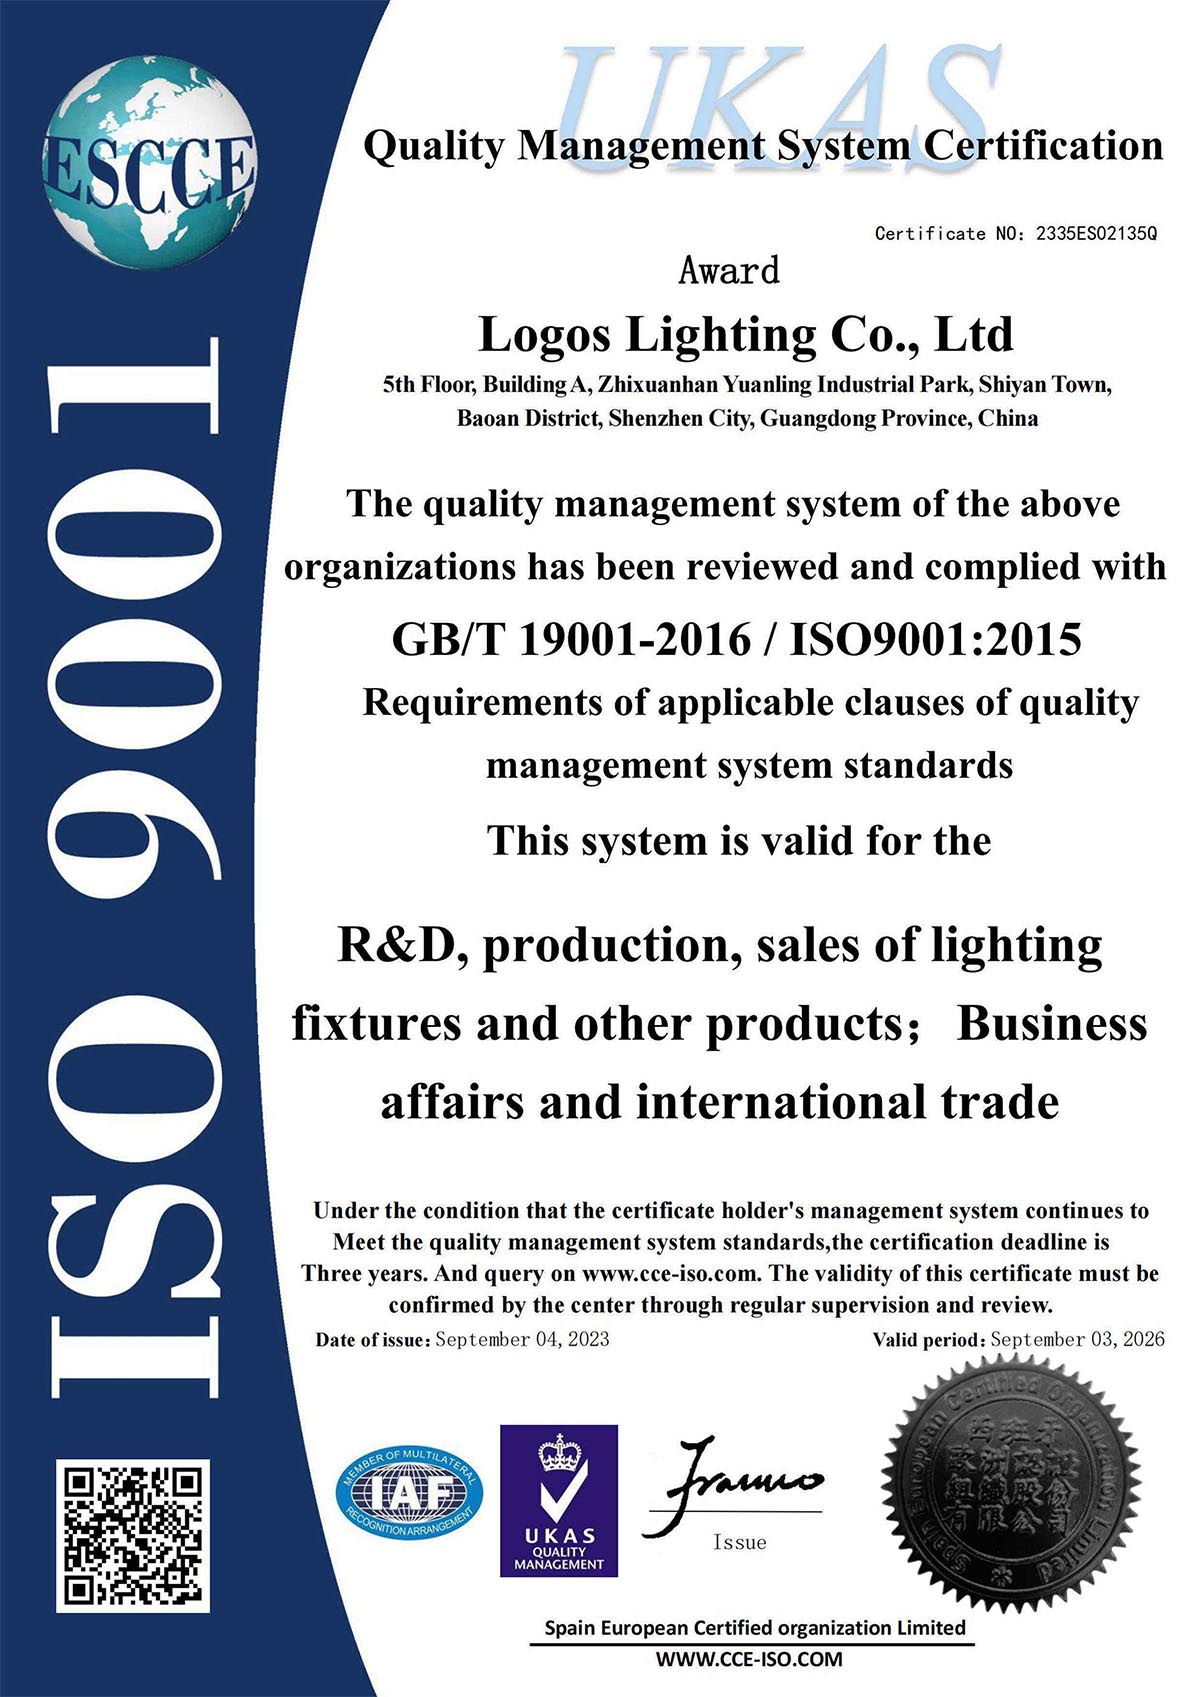 LogosLED ISO9001 Certificate